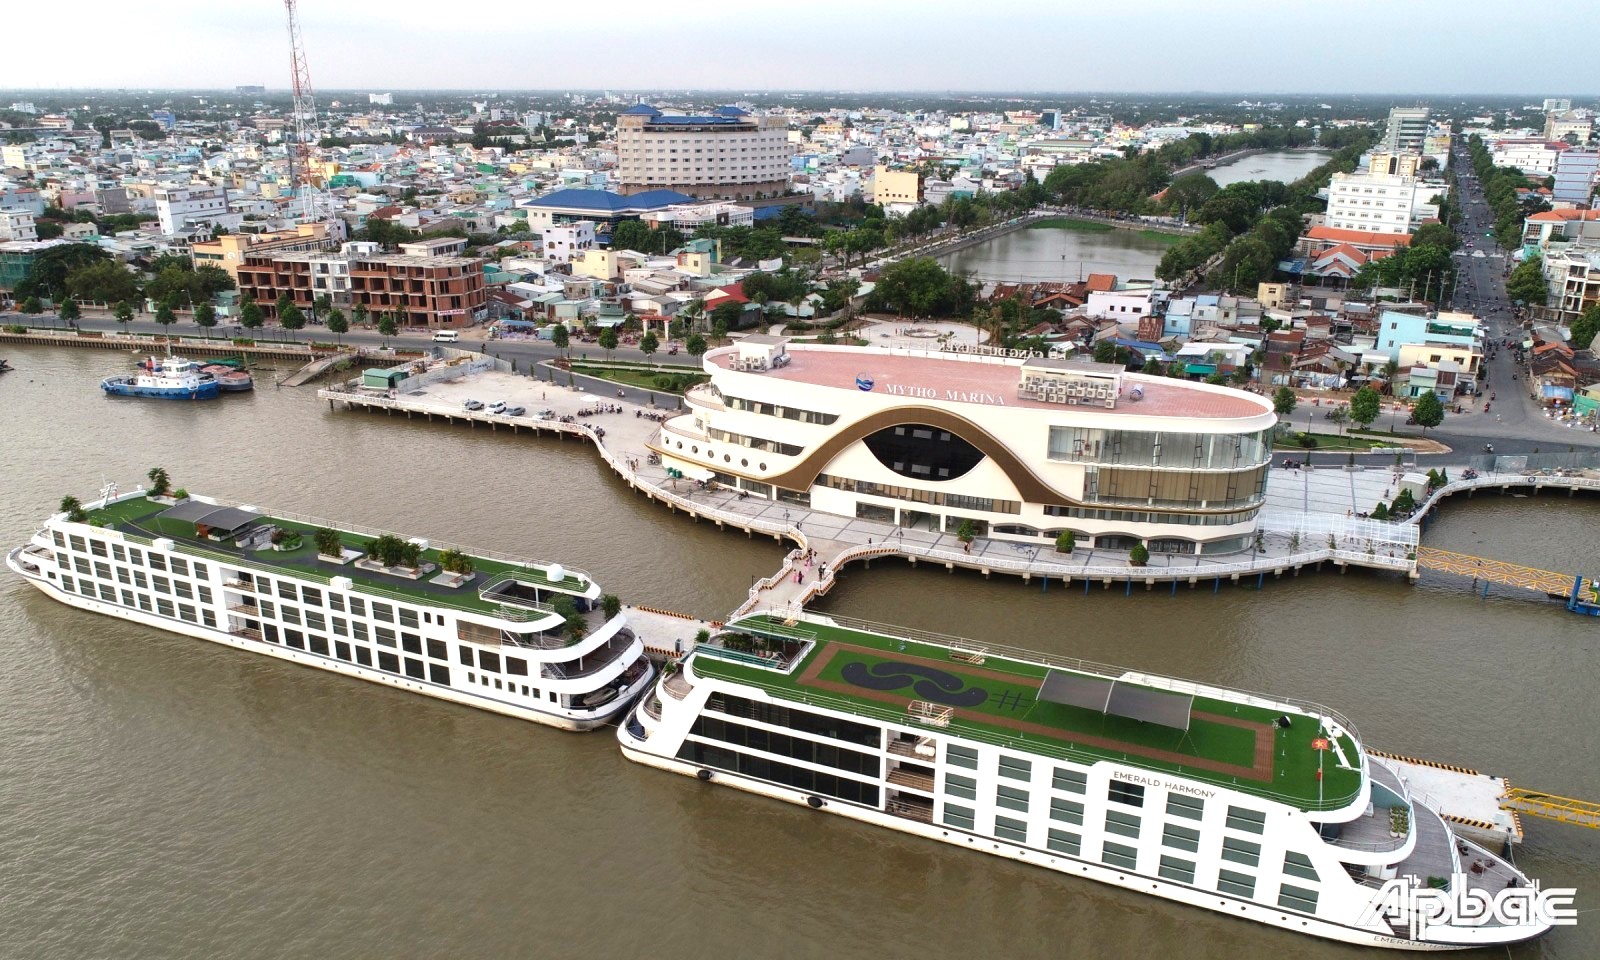 Cảng Du thuyền Mỹ Tho, tỉnh Tiền Giang vừa được công nhận điểm du lịch tiêu biểu Đồng bằng sông Cửu Long. Ảnh: Báo Ấp Bắc.